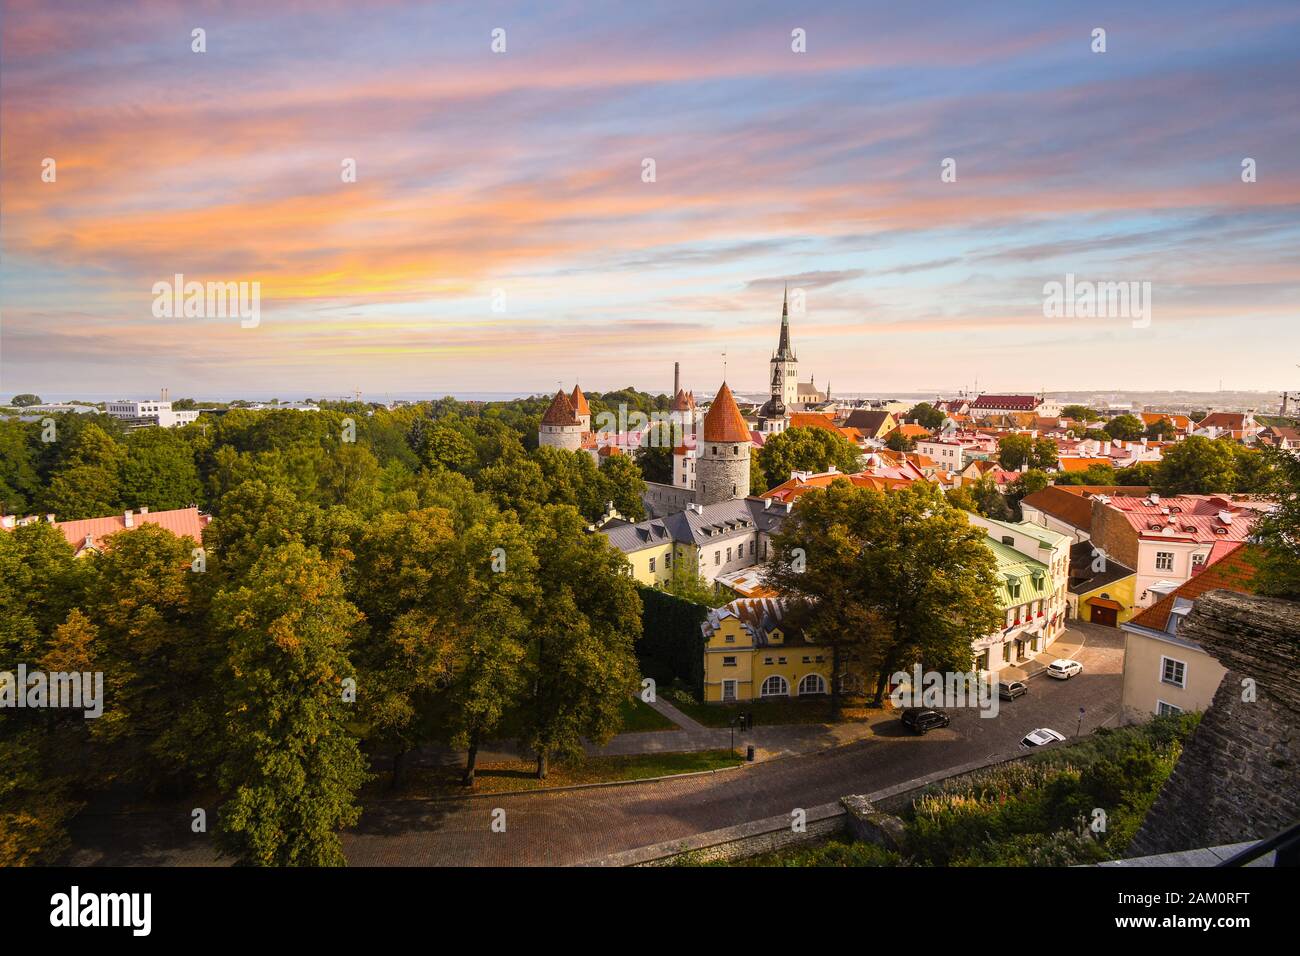 Ein farbenfroher Sonnenuntergang über der mittelalterlichen Altstadt von Tallinn Estland, von der Oberstadt Toompea Hill im europäischen Baltikum aus gesehen. Stockfoto